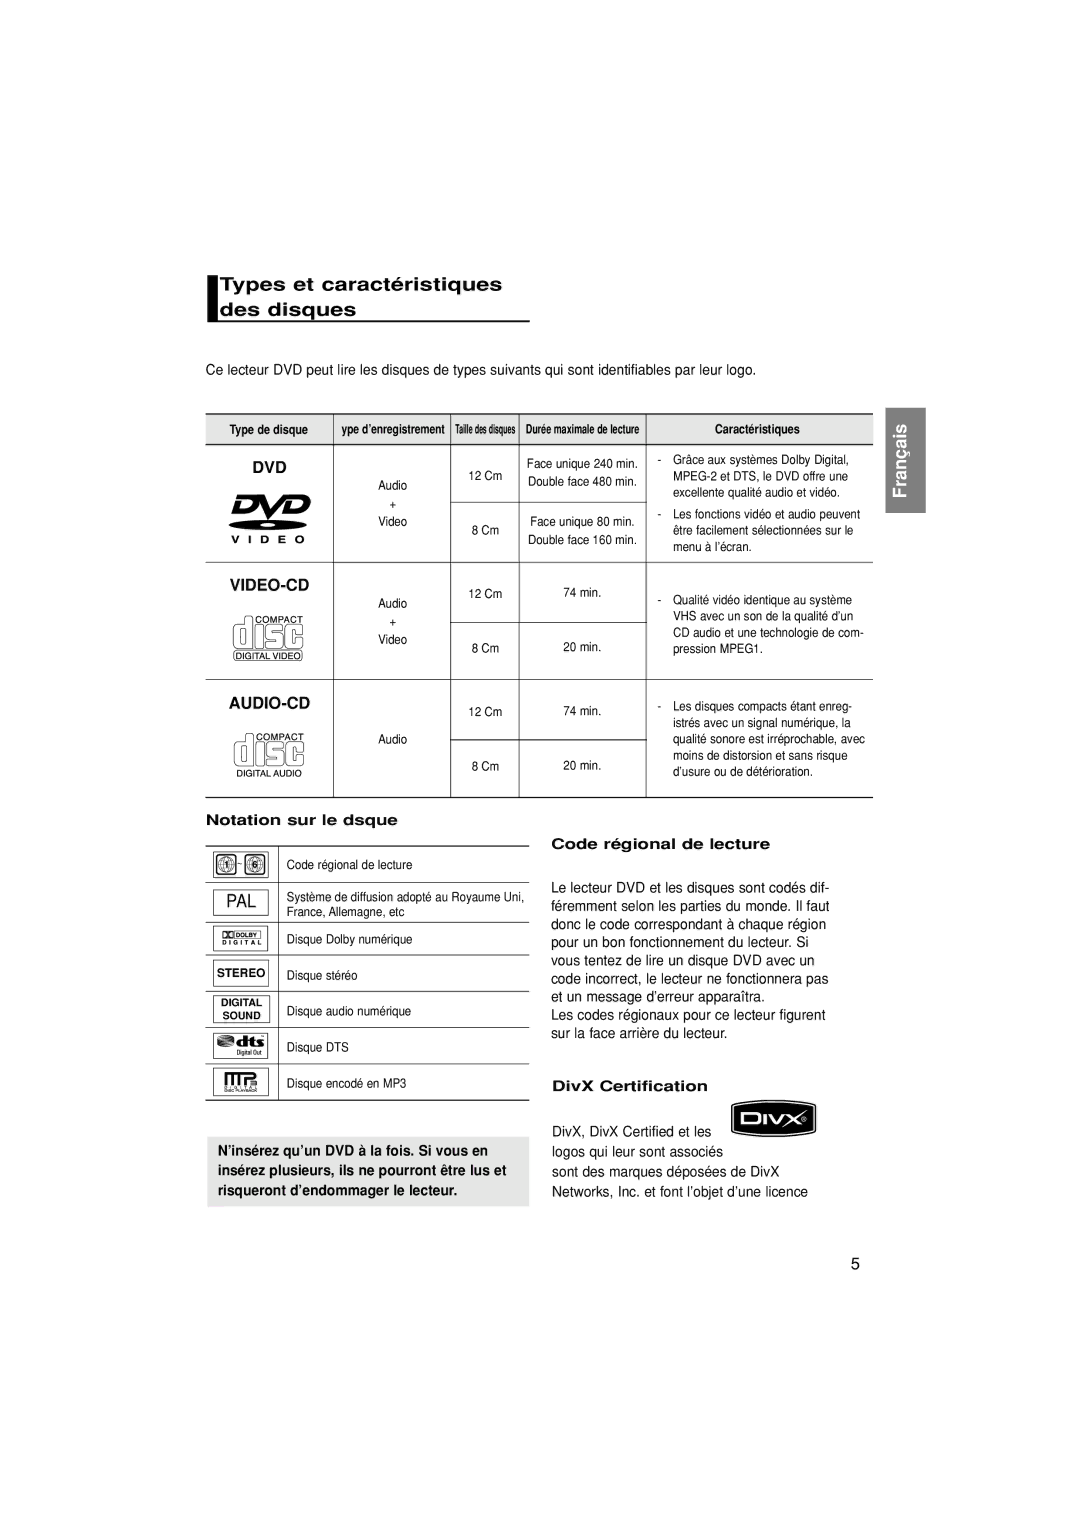 Samsung DVD-HD870/XEL manual Types et caractéristiques des disques, Notation sur le dsque, Code régional de lecture 